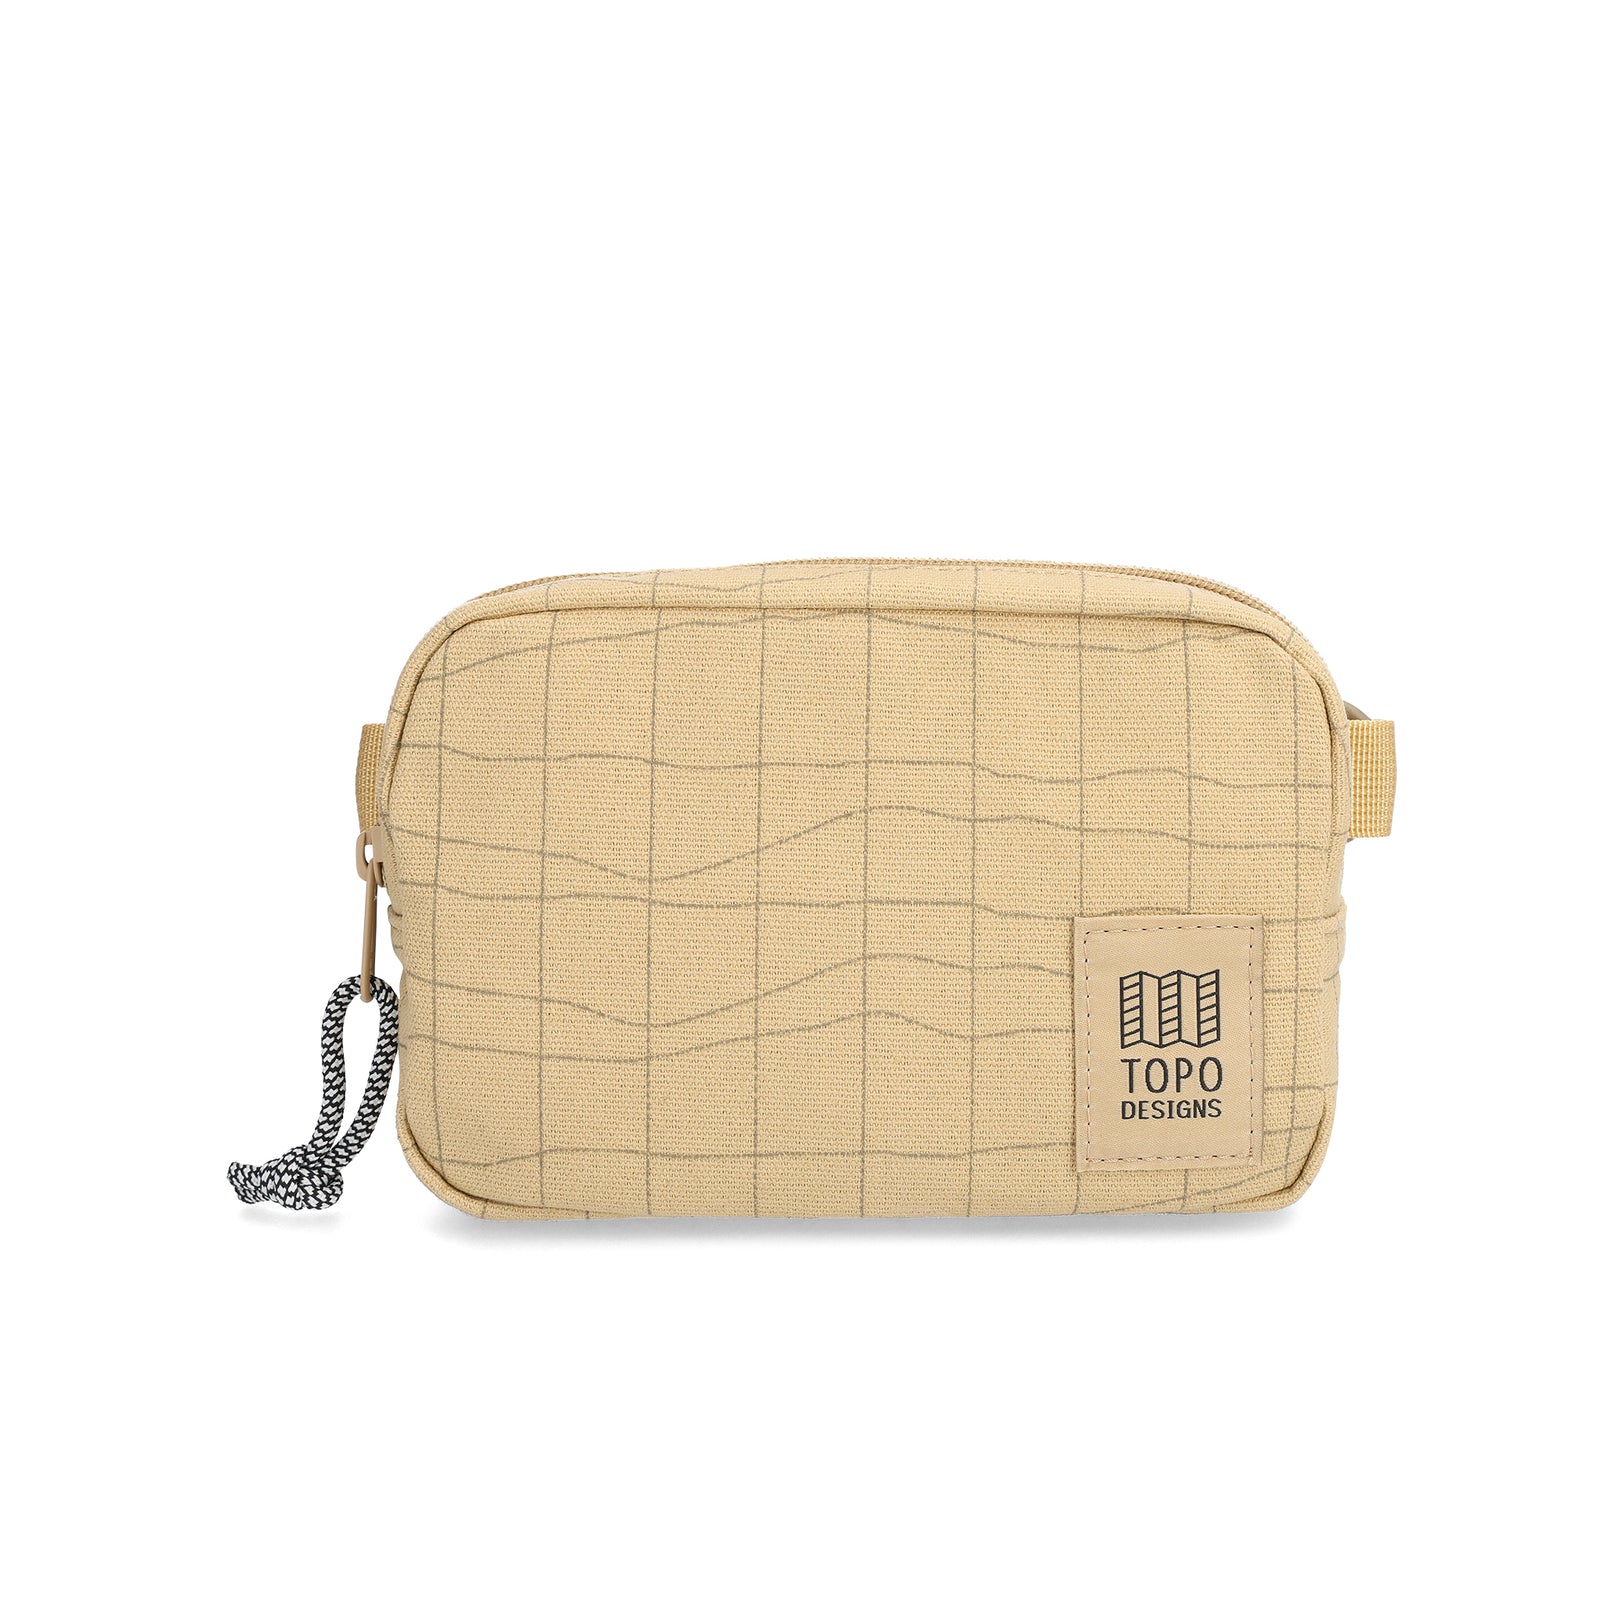 Front View of Topo Designs Dirt Belt Bag in "Sahara Terrain"